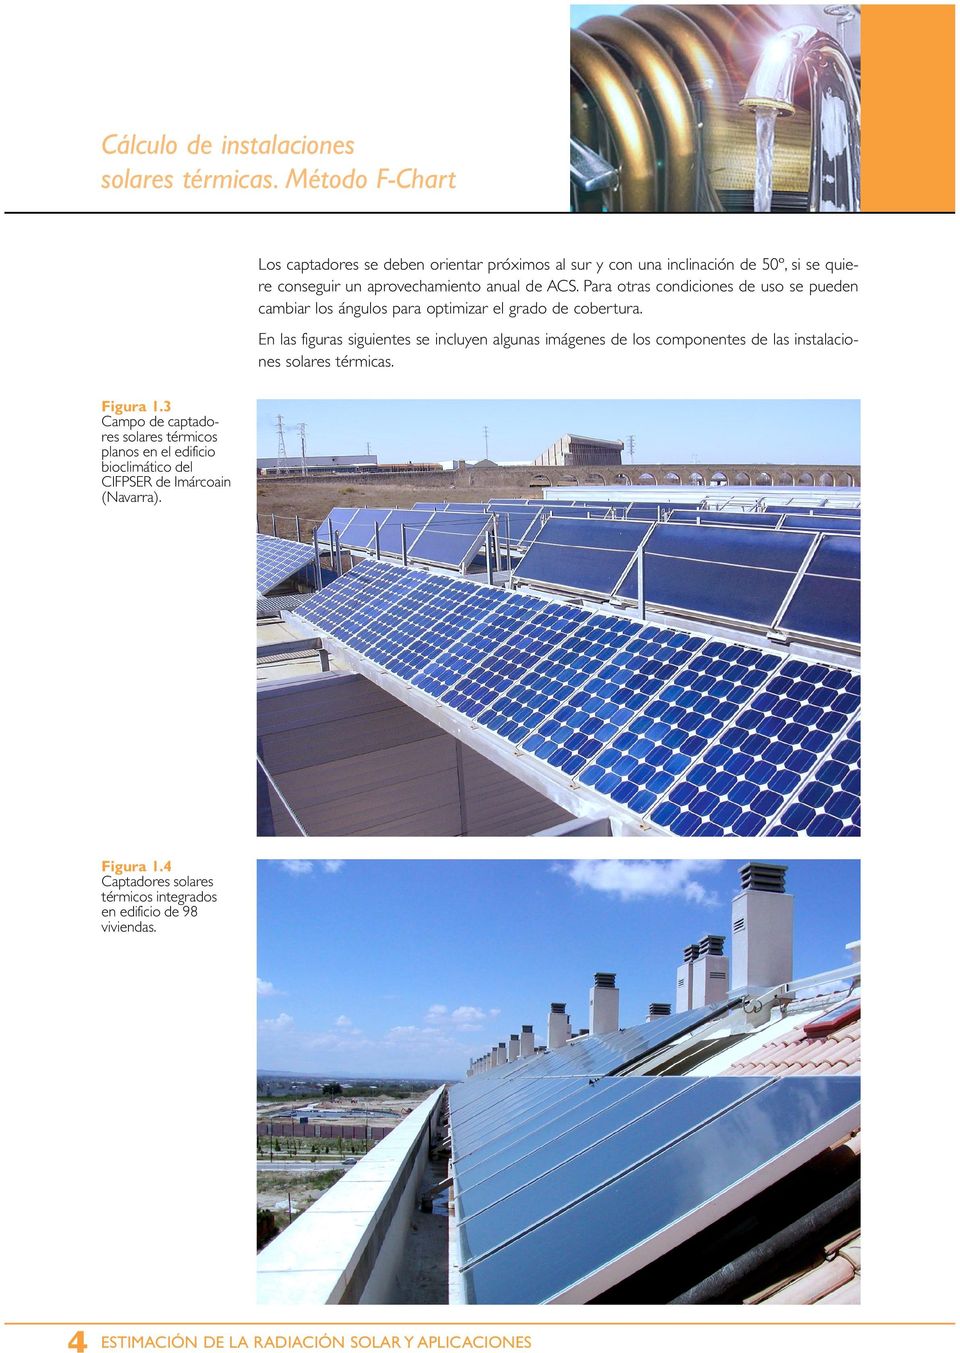 En las figuras siguientes se incluyen algunas imágenes de los componentes de las instalaciones solares térmicas. Figura 1.